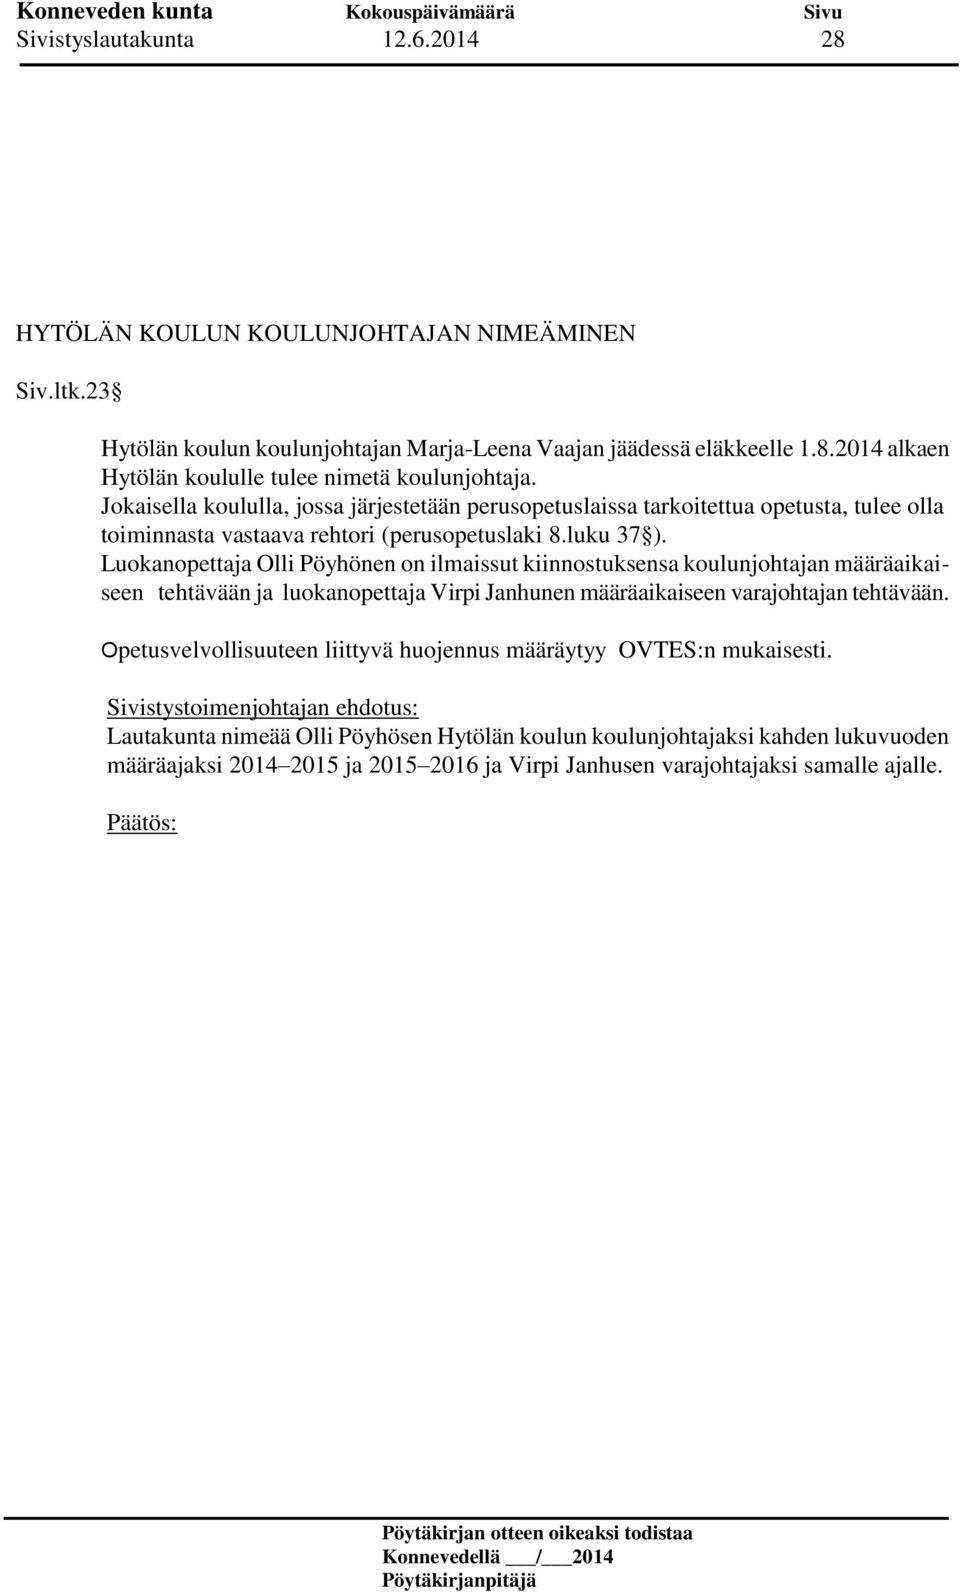 Luokanopettaja Olli Pöyhönen on ilmaissut kiinnostuksensa koulunjohtajan määräaikaiseen tehtävään ja luokanopettaja Virpi Janhunen määräaikaiseen varajohtajan tehtävään.